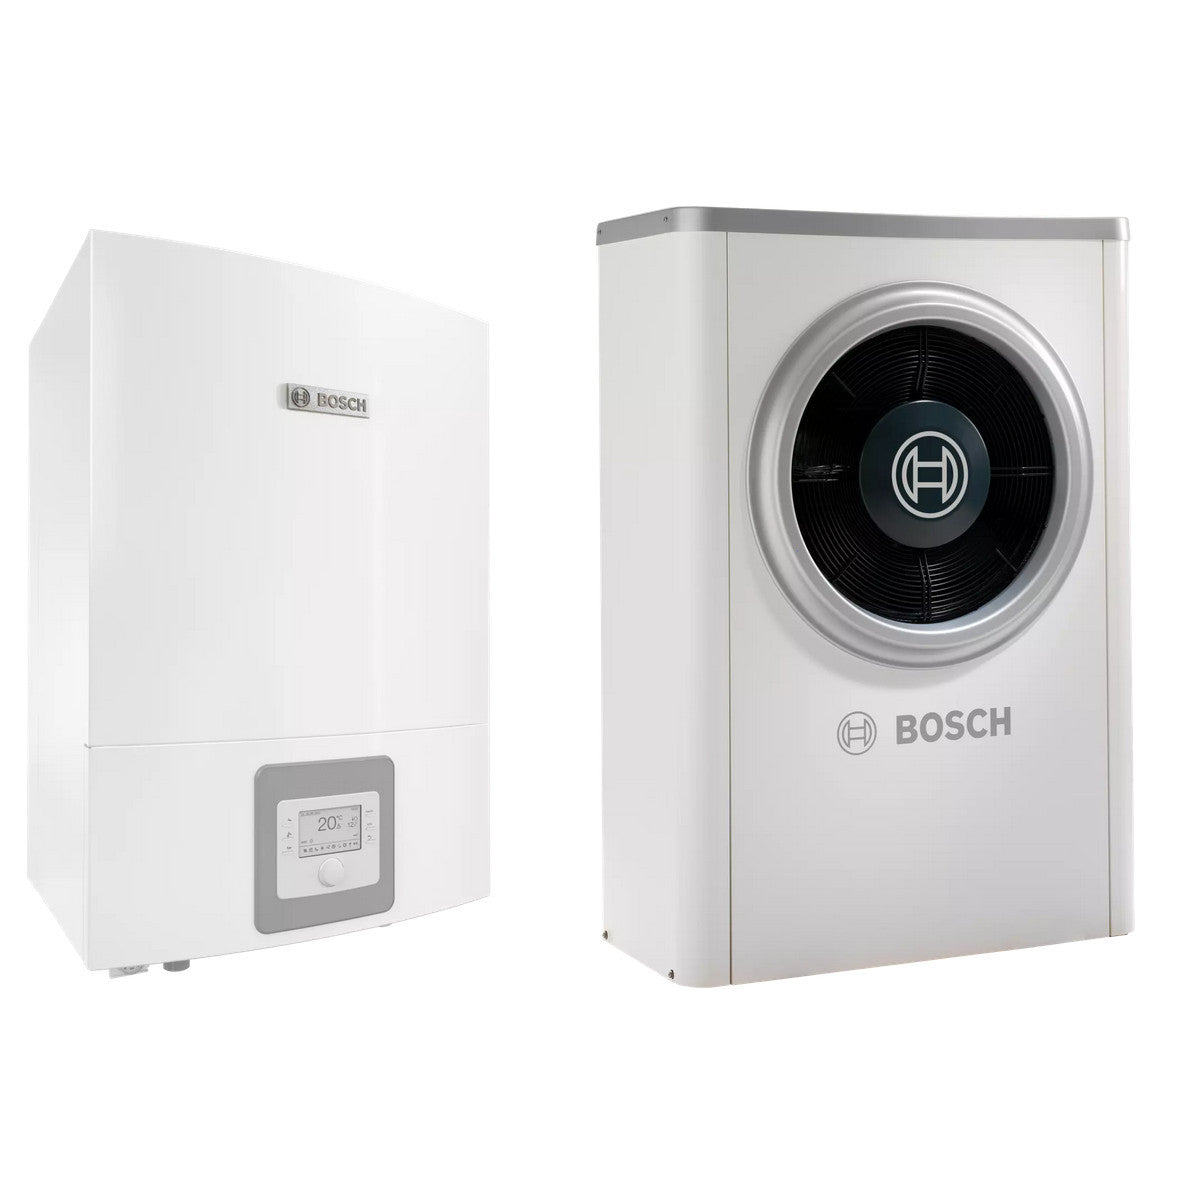 Bosch Compress 6000 AWB+AW-9 levegő-víz hőszivattyú, monoblok, fűtőbetét nélkül, R410A-0